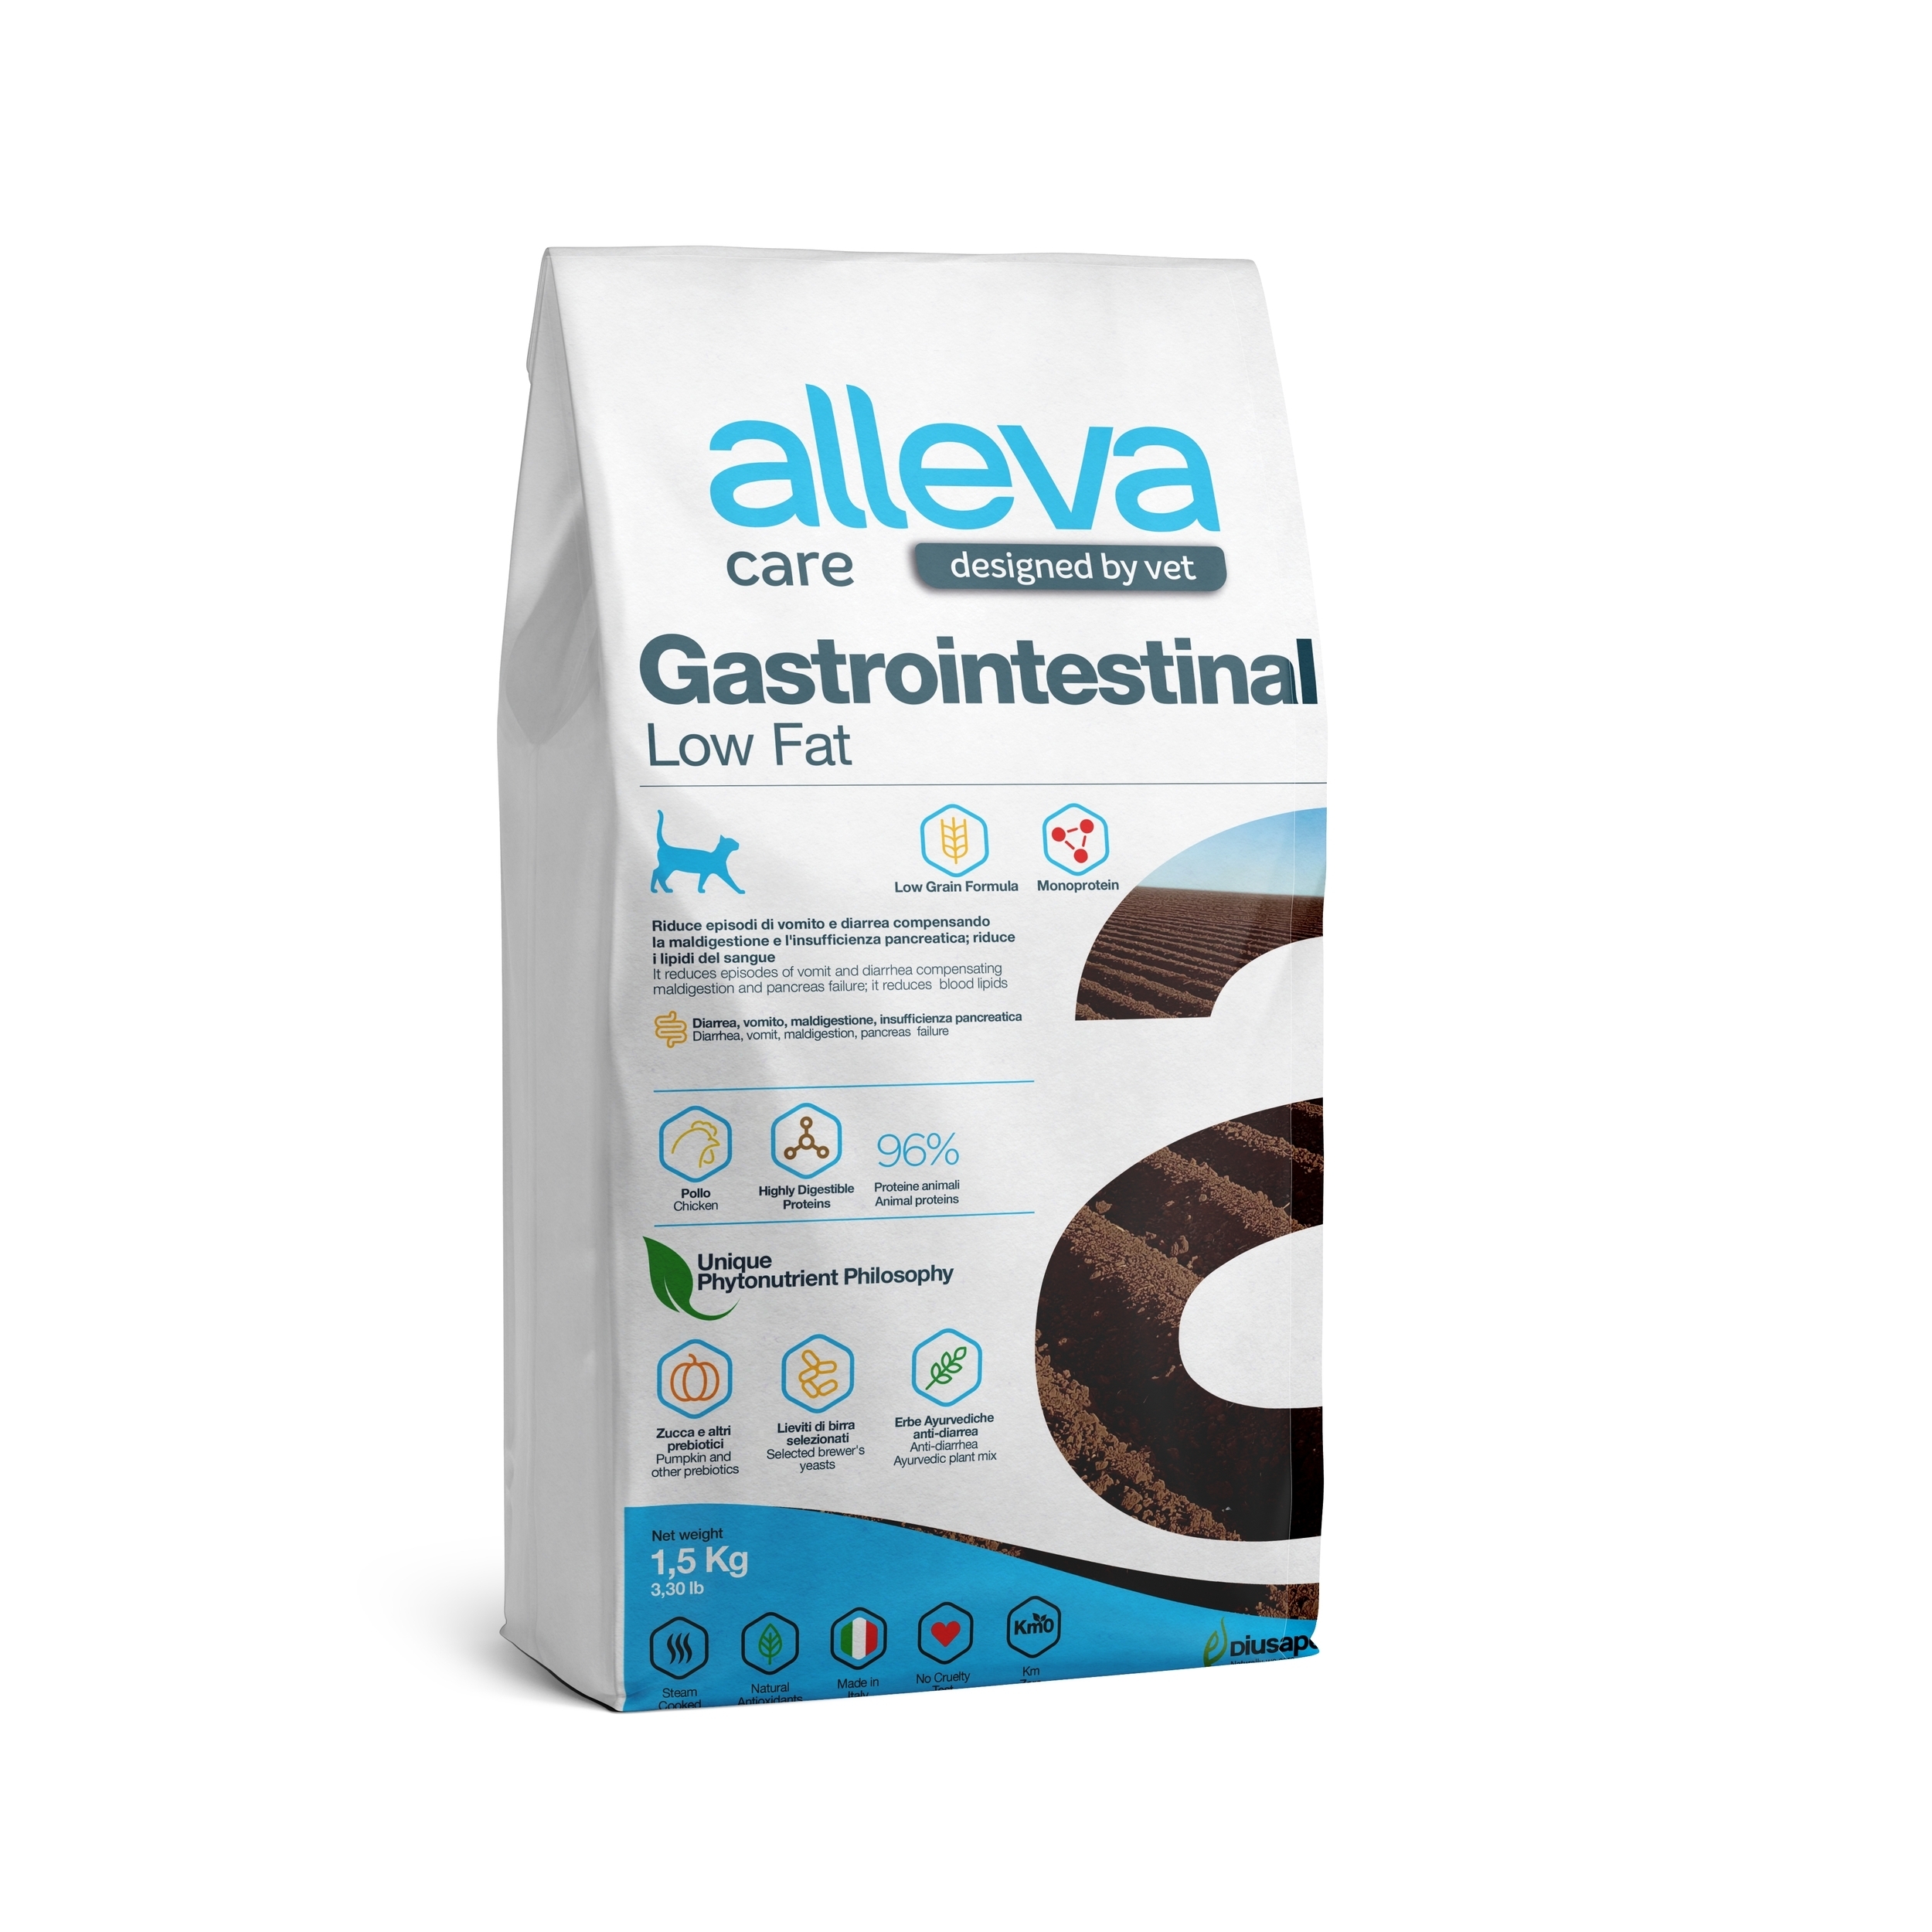 корм для кошек "alleva care gastrointestinal low fat" (аллева кэр гастроинтестинал) с низким содержанием жиров